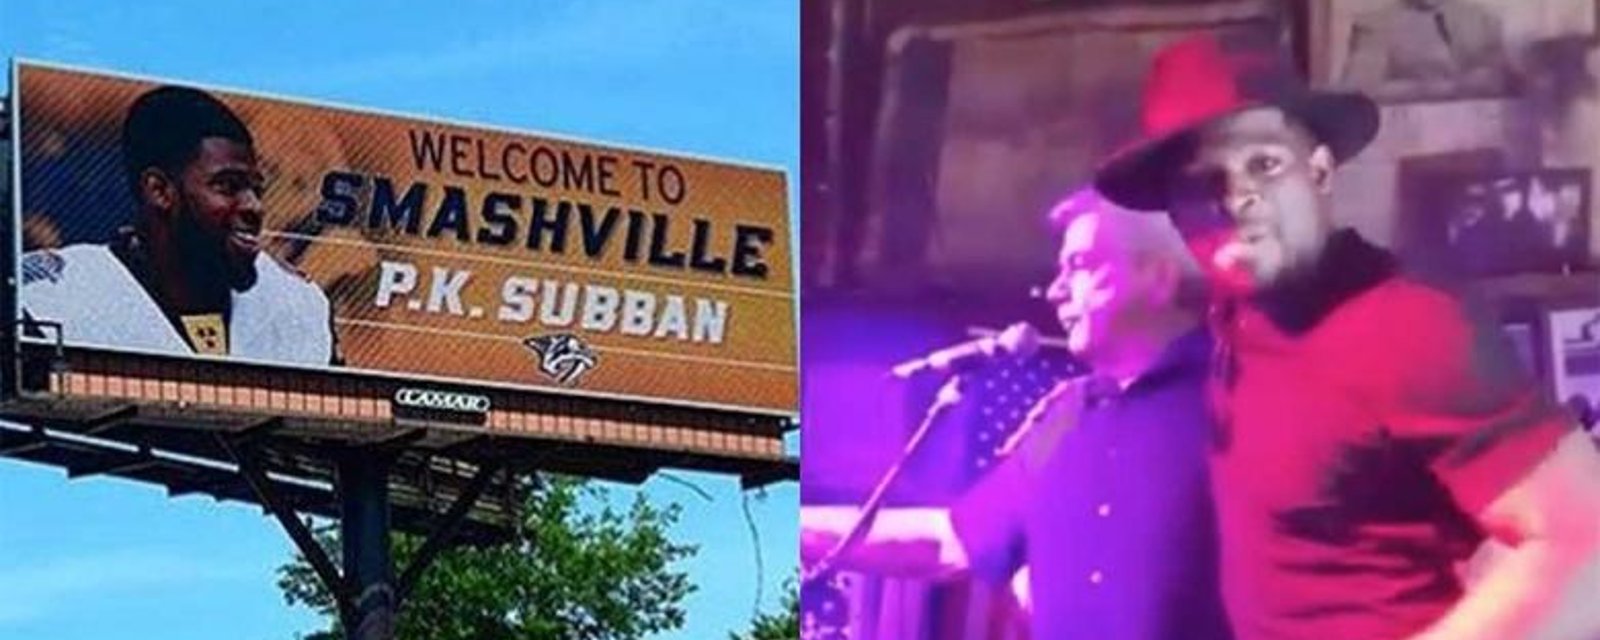 [VIDÉO] PK Subban fait un malheur sur une scène country de Nashville!